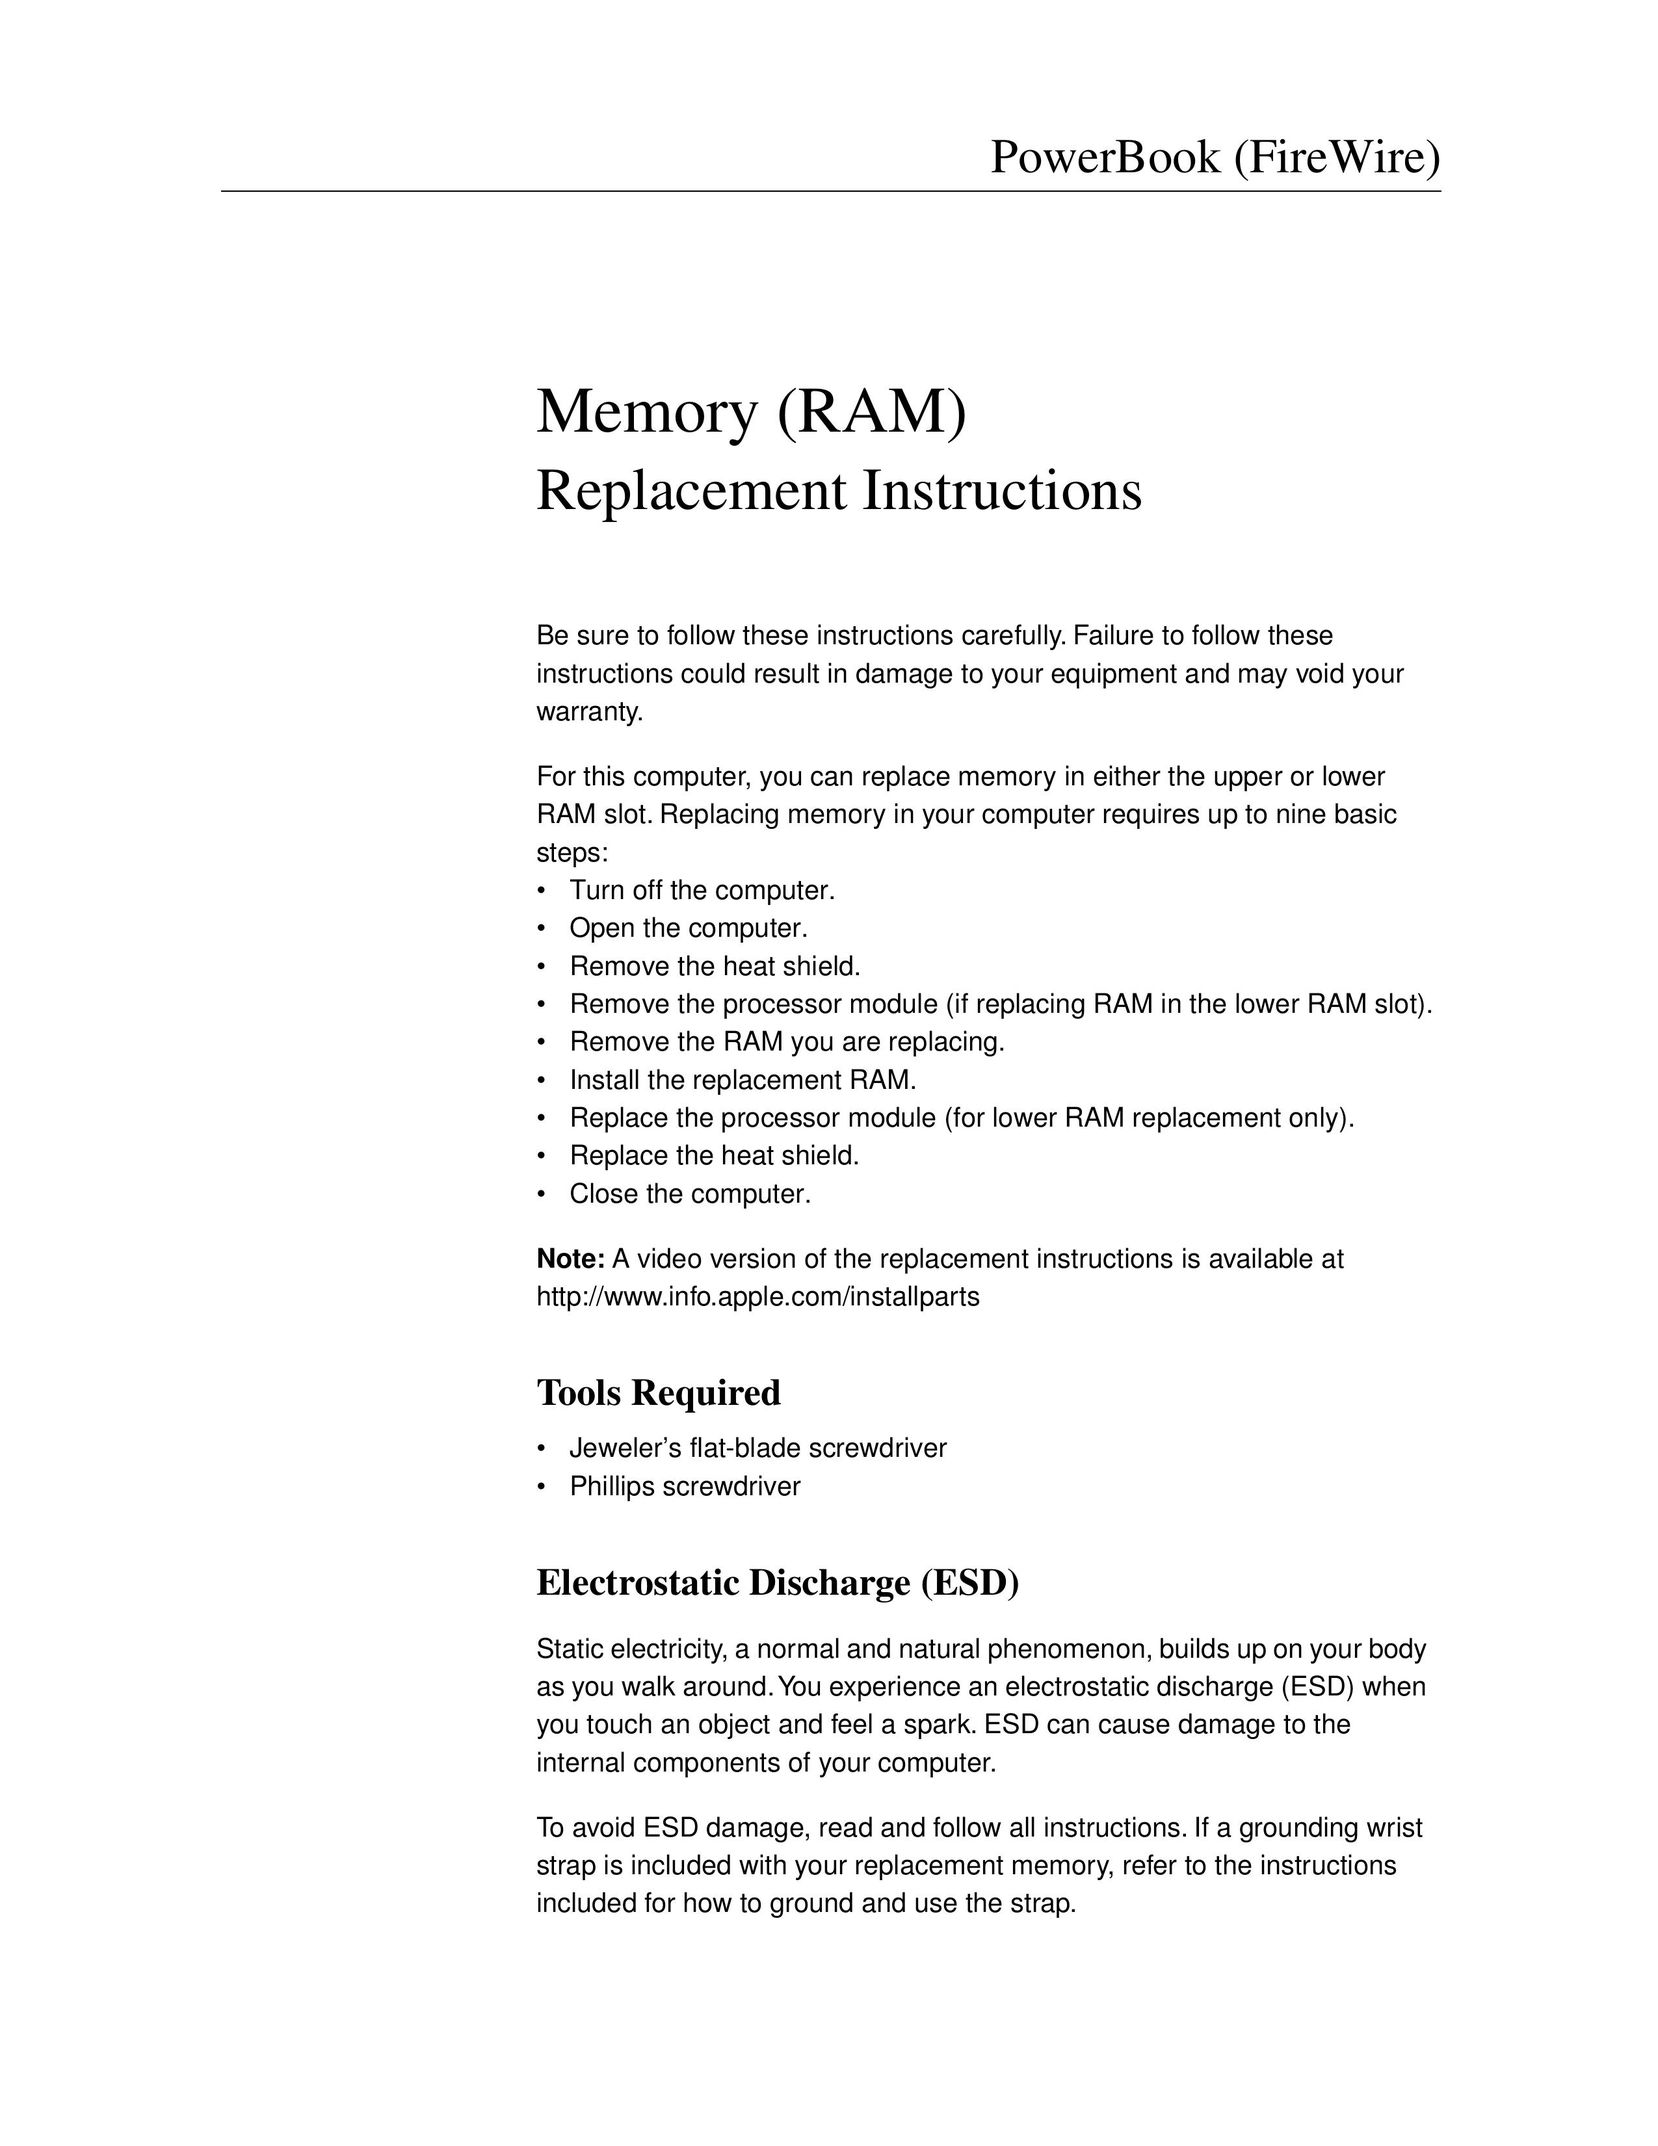 Apple Memory (RAM) Computer Hardware User Manual